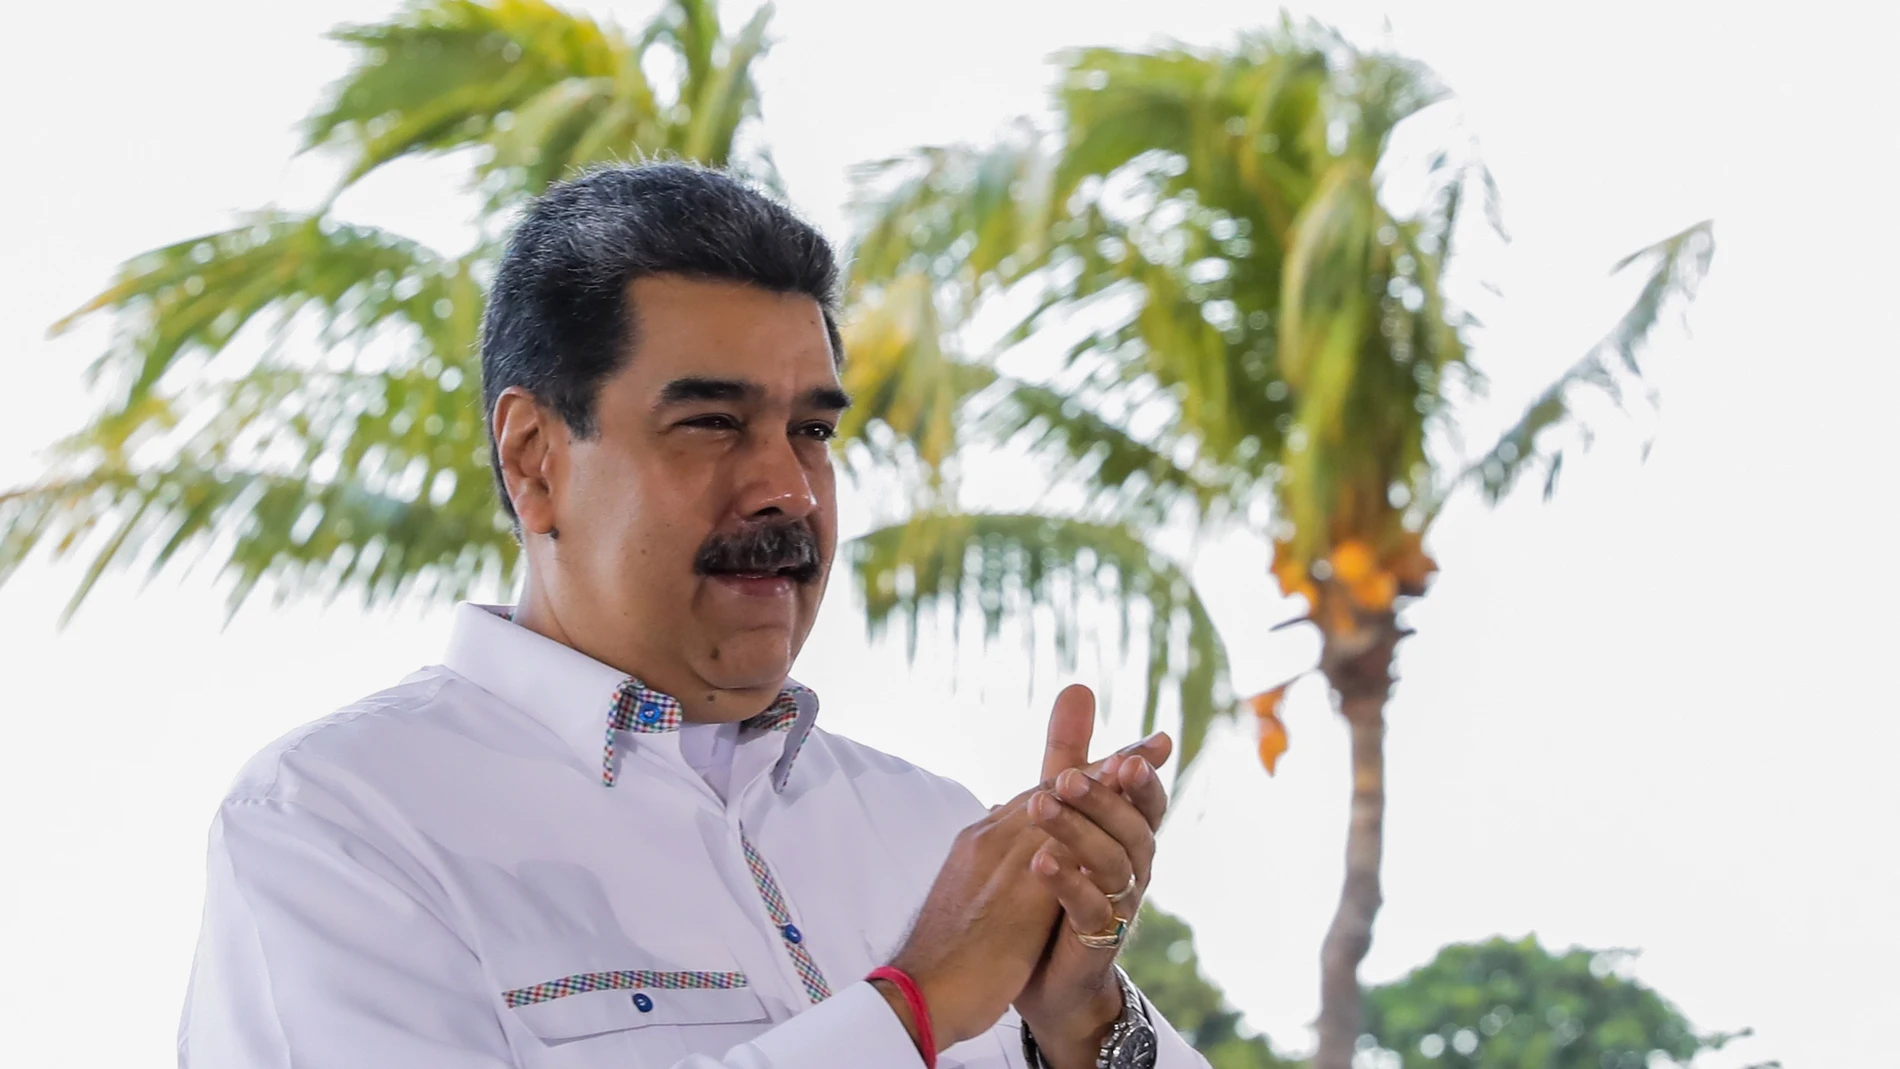 LA GUAIRA (VENEZUELA).- 14/12/2021.- Fotografía cedida por Palacio de Miraflores que muestra al presidente de Venezuela, Nicolás Maduro, en la clausura de la XIV edición de la FitVen hoy, en La Guaira (Venezuela). Maduro afirmó este jueves que se ha reunido, recientemente, "con alguien" de la Agencia Central de Inteligencia (CIA, por sus siglas en inglés) de Estados Unidos, si bien no desveló con quién ni con qué objeto. EFE/PALACIO DE MIRAFLORES/SOLO USO EDITORIAL/ SOLO DISPONIBLE PARA ILUSTRAR LA NOTICIA QUE ACOMPAÑA (CRÉDITO OBLIGATORIO)